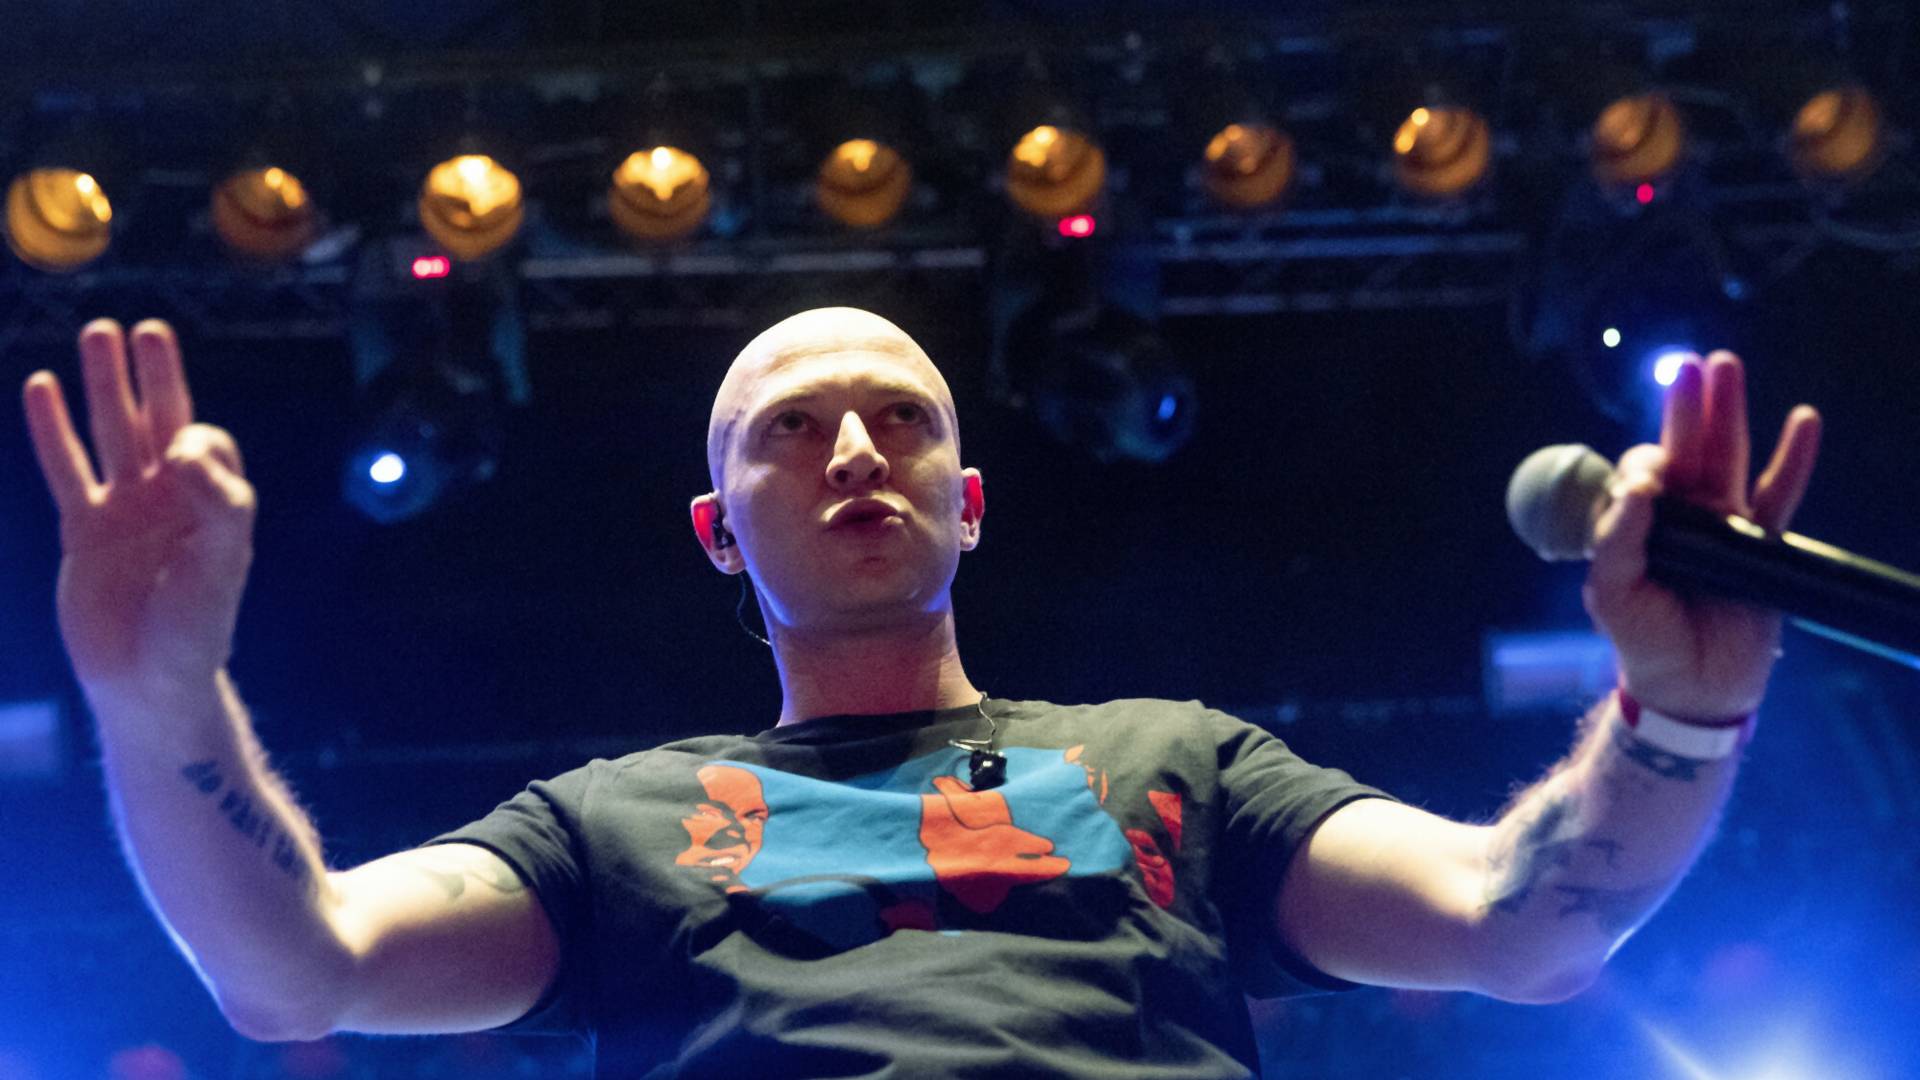 Rosyjski raper zagra serię antywojennych koncertów. Dochód przekaże polskiej fundacji